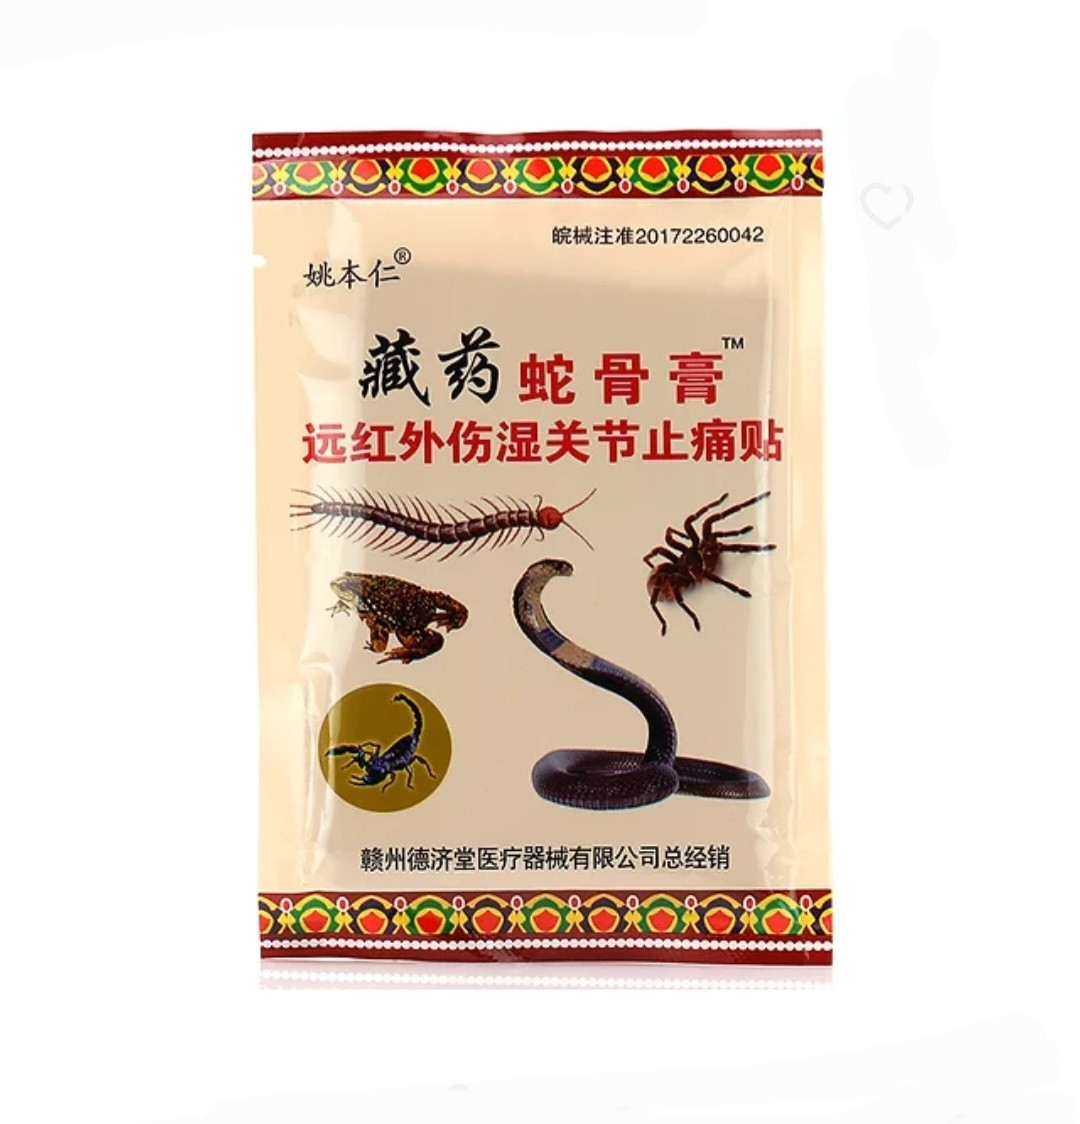 Китайский обезболивающий пластырь " 5 ядов " Змея, сороконожка, скорпион, жаба, тарантул, 8 штук